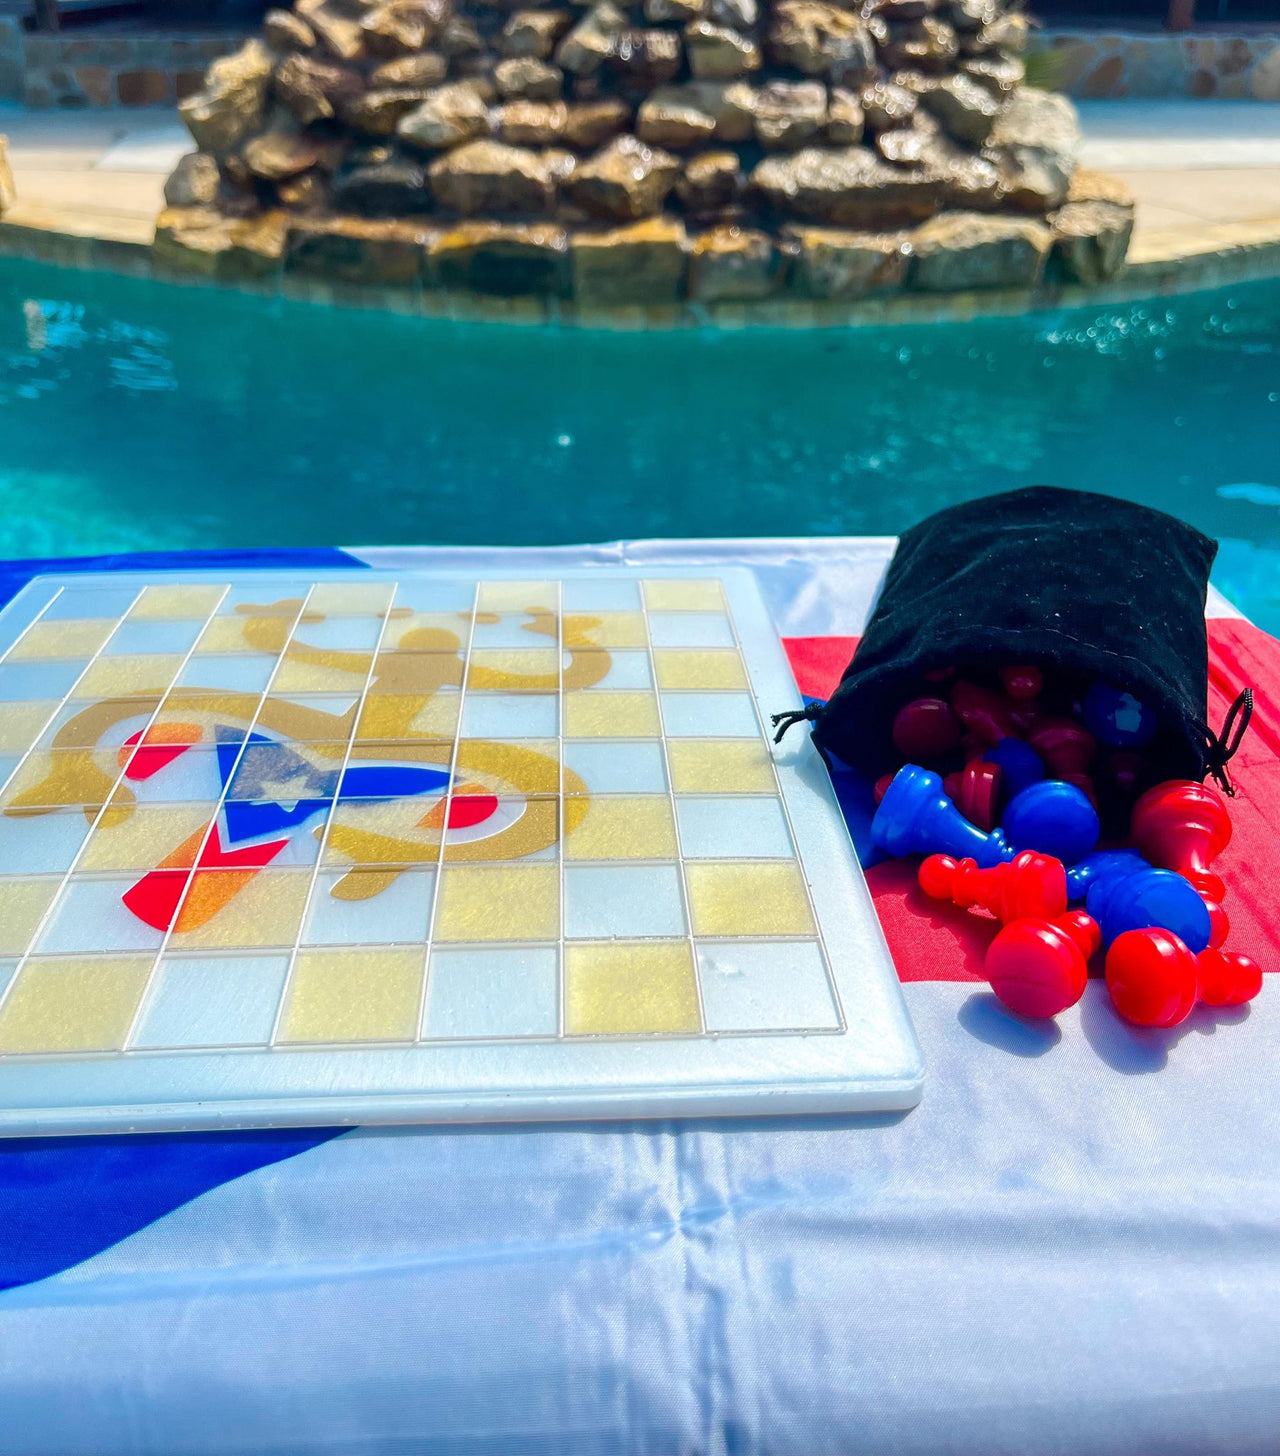 Custom Made Puerto Rico Themed Chessboard